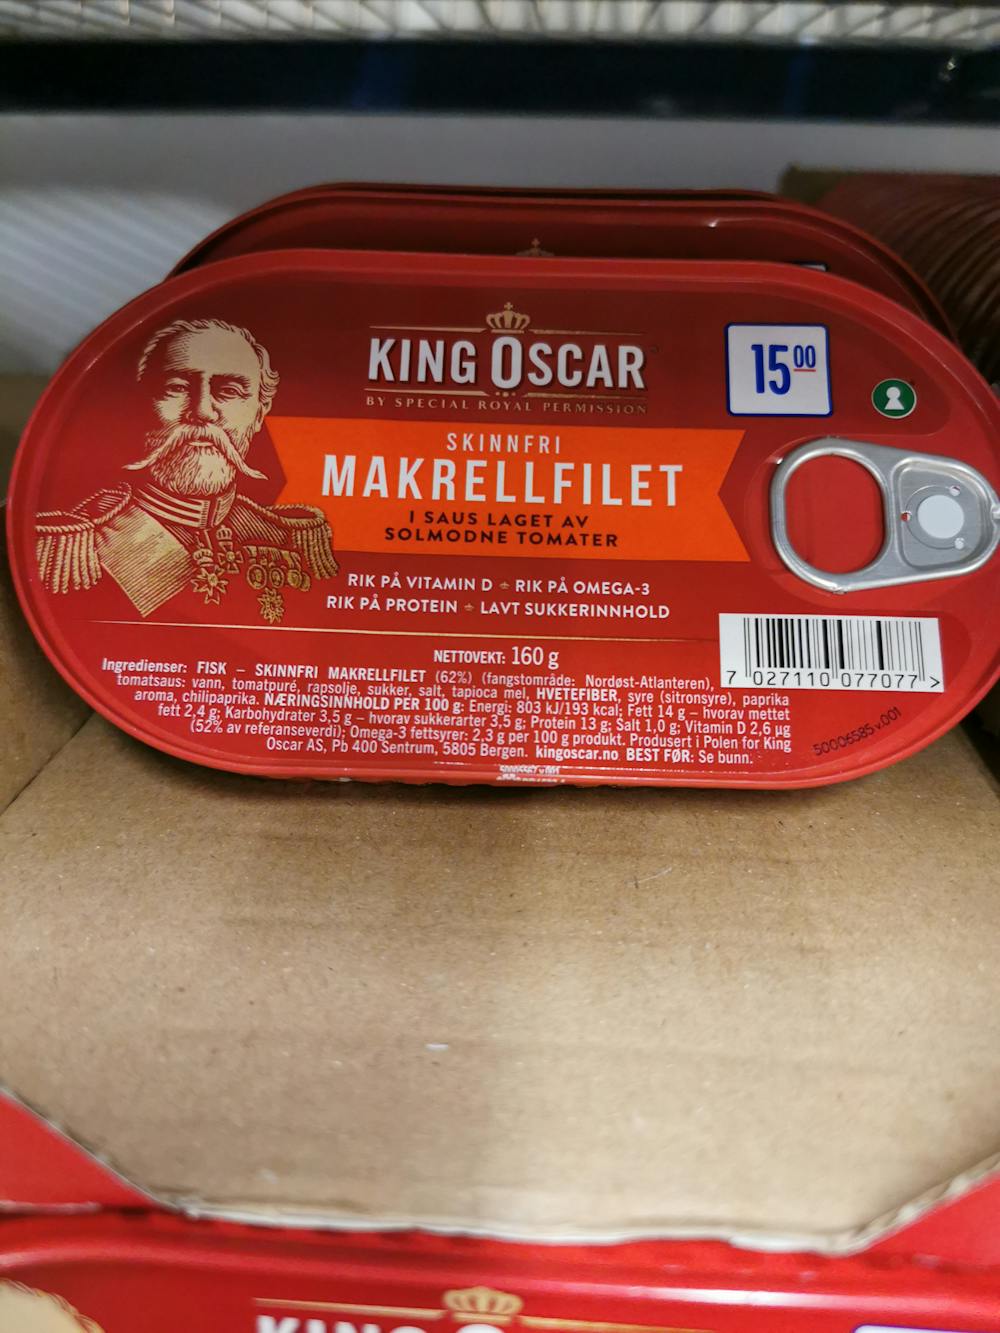 Ingrediensliste - Skinnfri makrellfilet, i saus laget av solmodne tomater, King Oscar